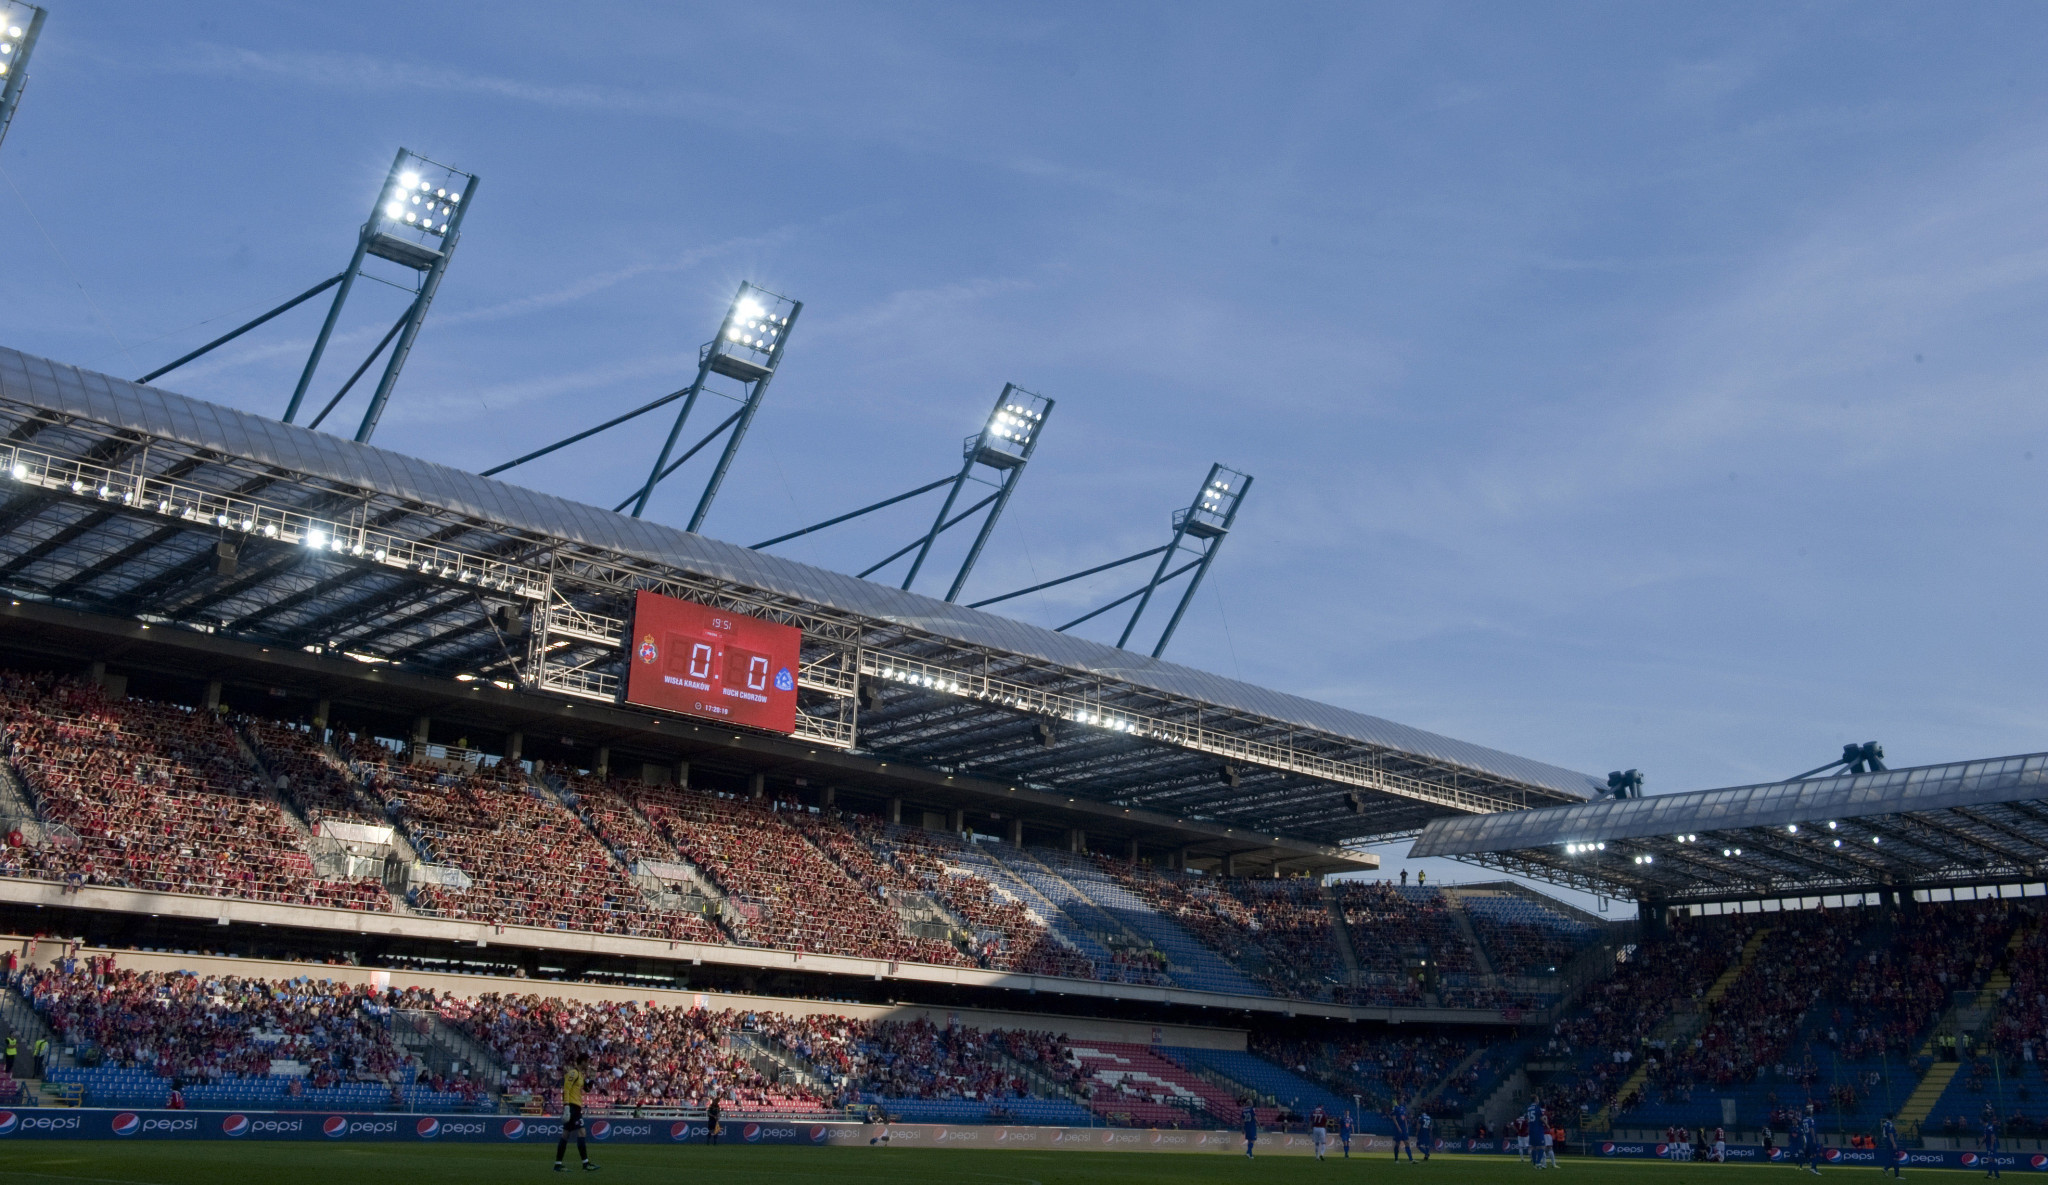 Henryk Reyman Municipal Stadium leased to Kraków-Małopolska 2023 for one month